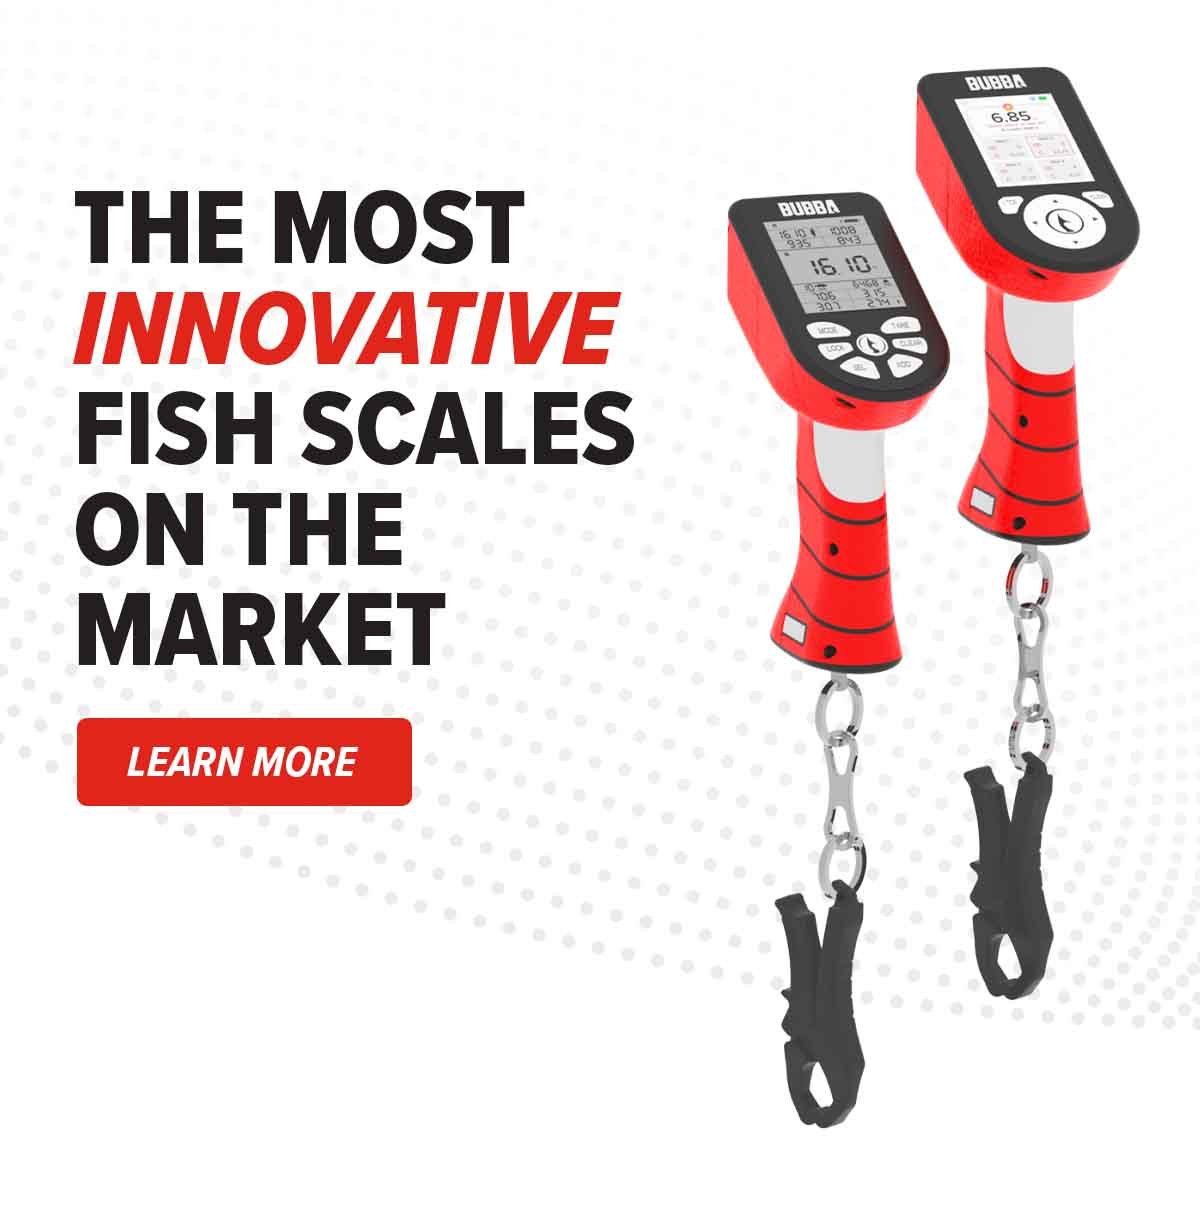 Bubba Pro Series Smart Fish Scale – Adventurer-Chef